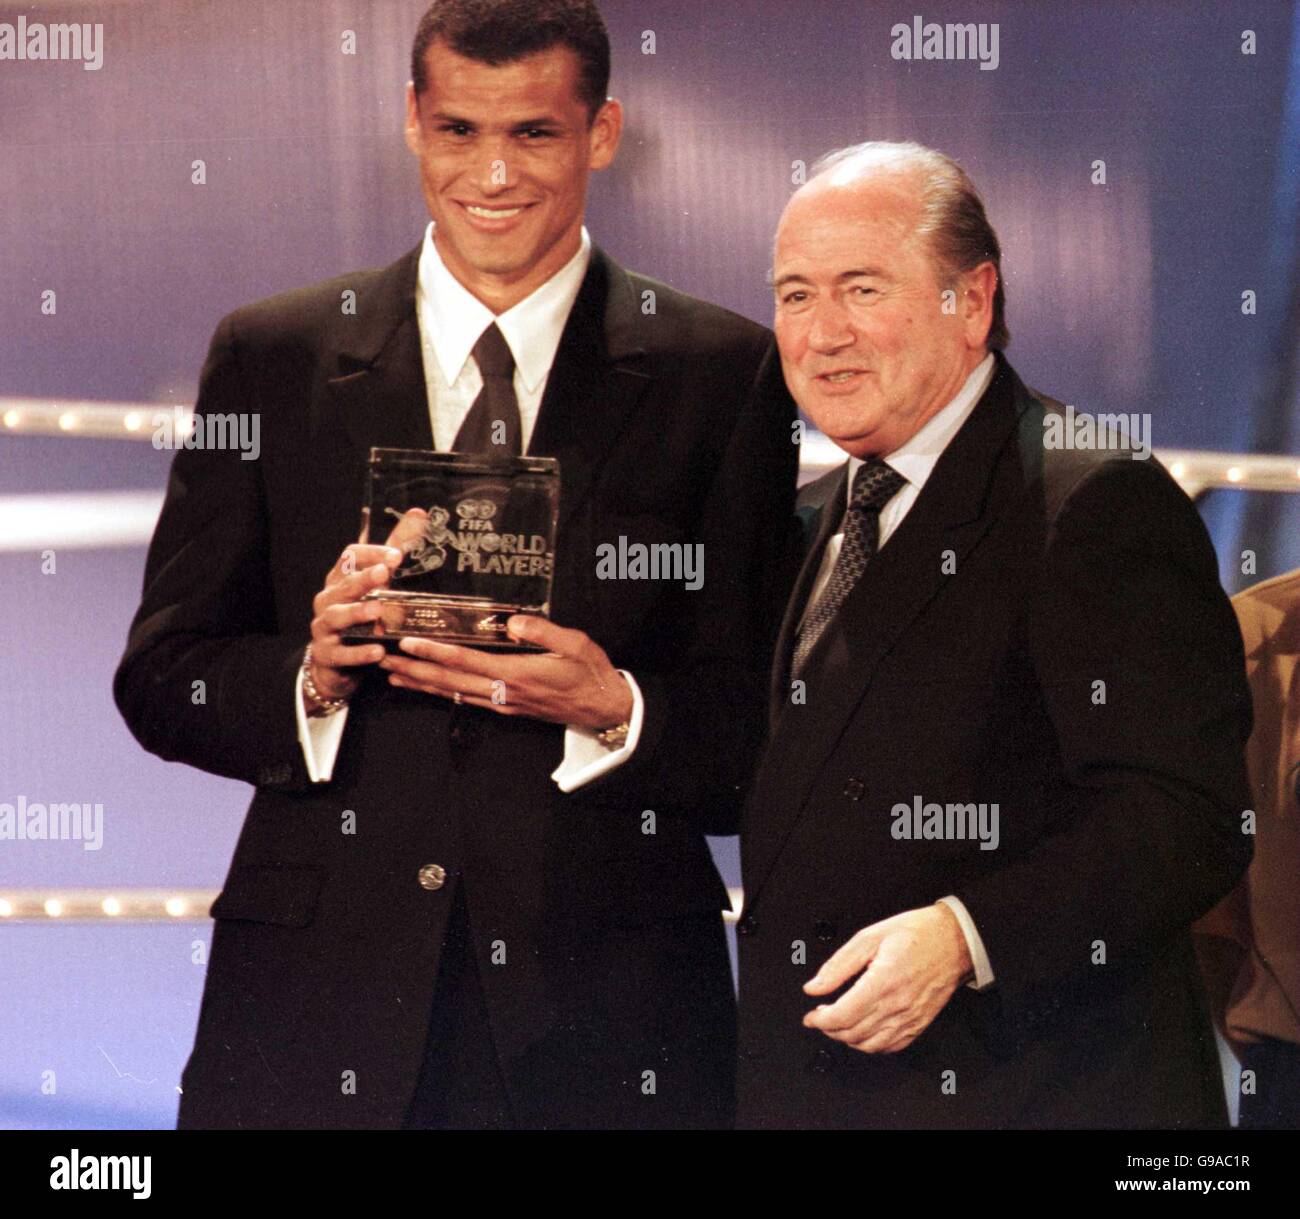 Rivaldo du Brésil et de Barcelone (l) reçoit le monde de la FIFA Trophée du joueur de l'année du président de la FIFA, Joseph Blatter Sepp (r) Banque D'Images